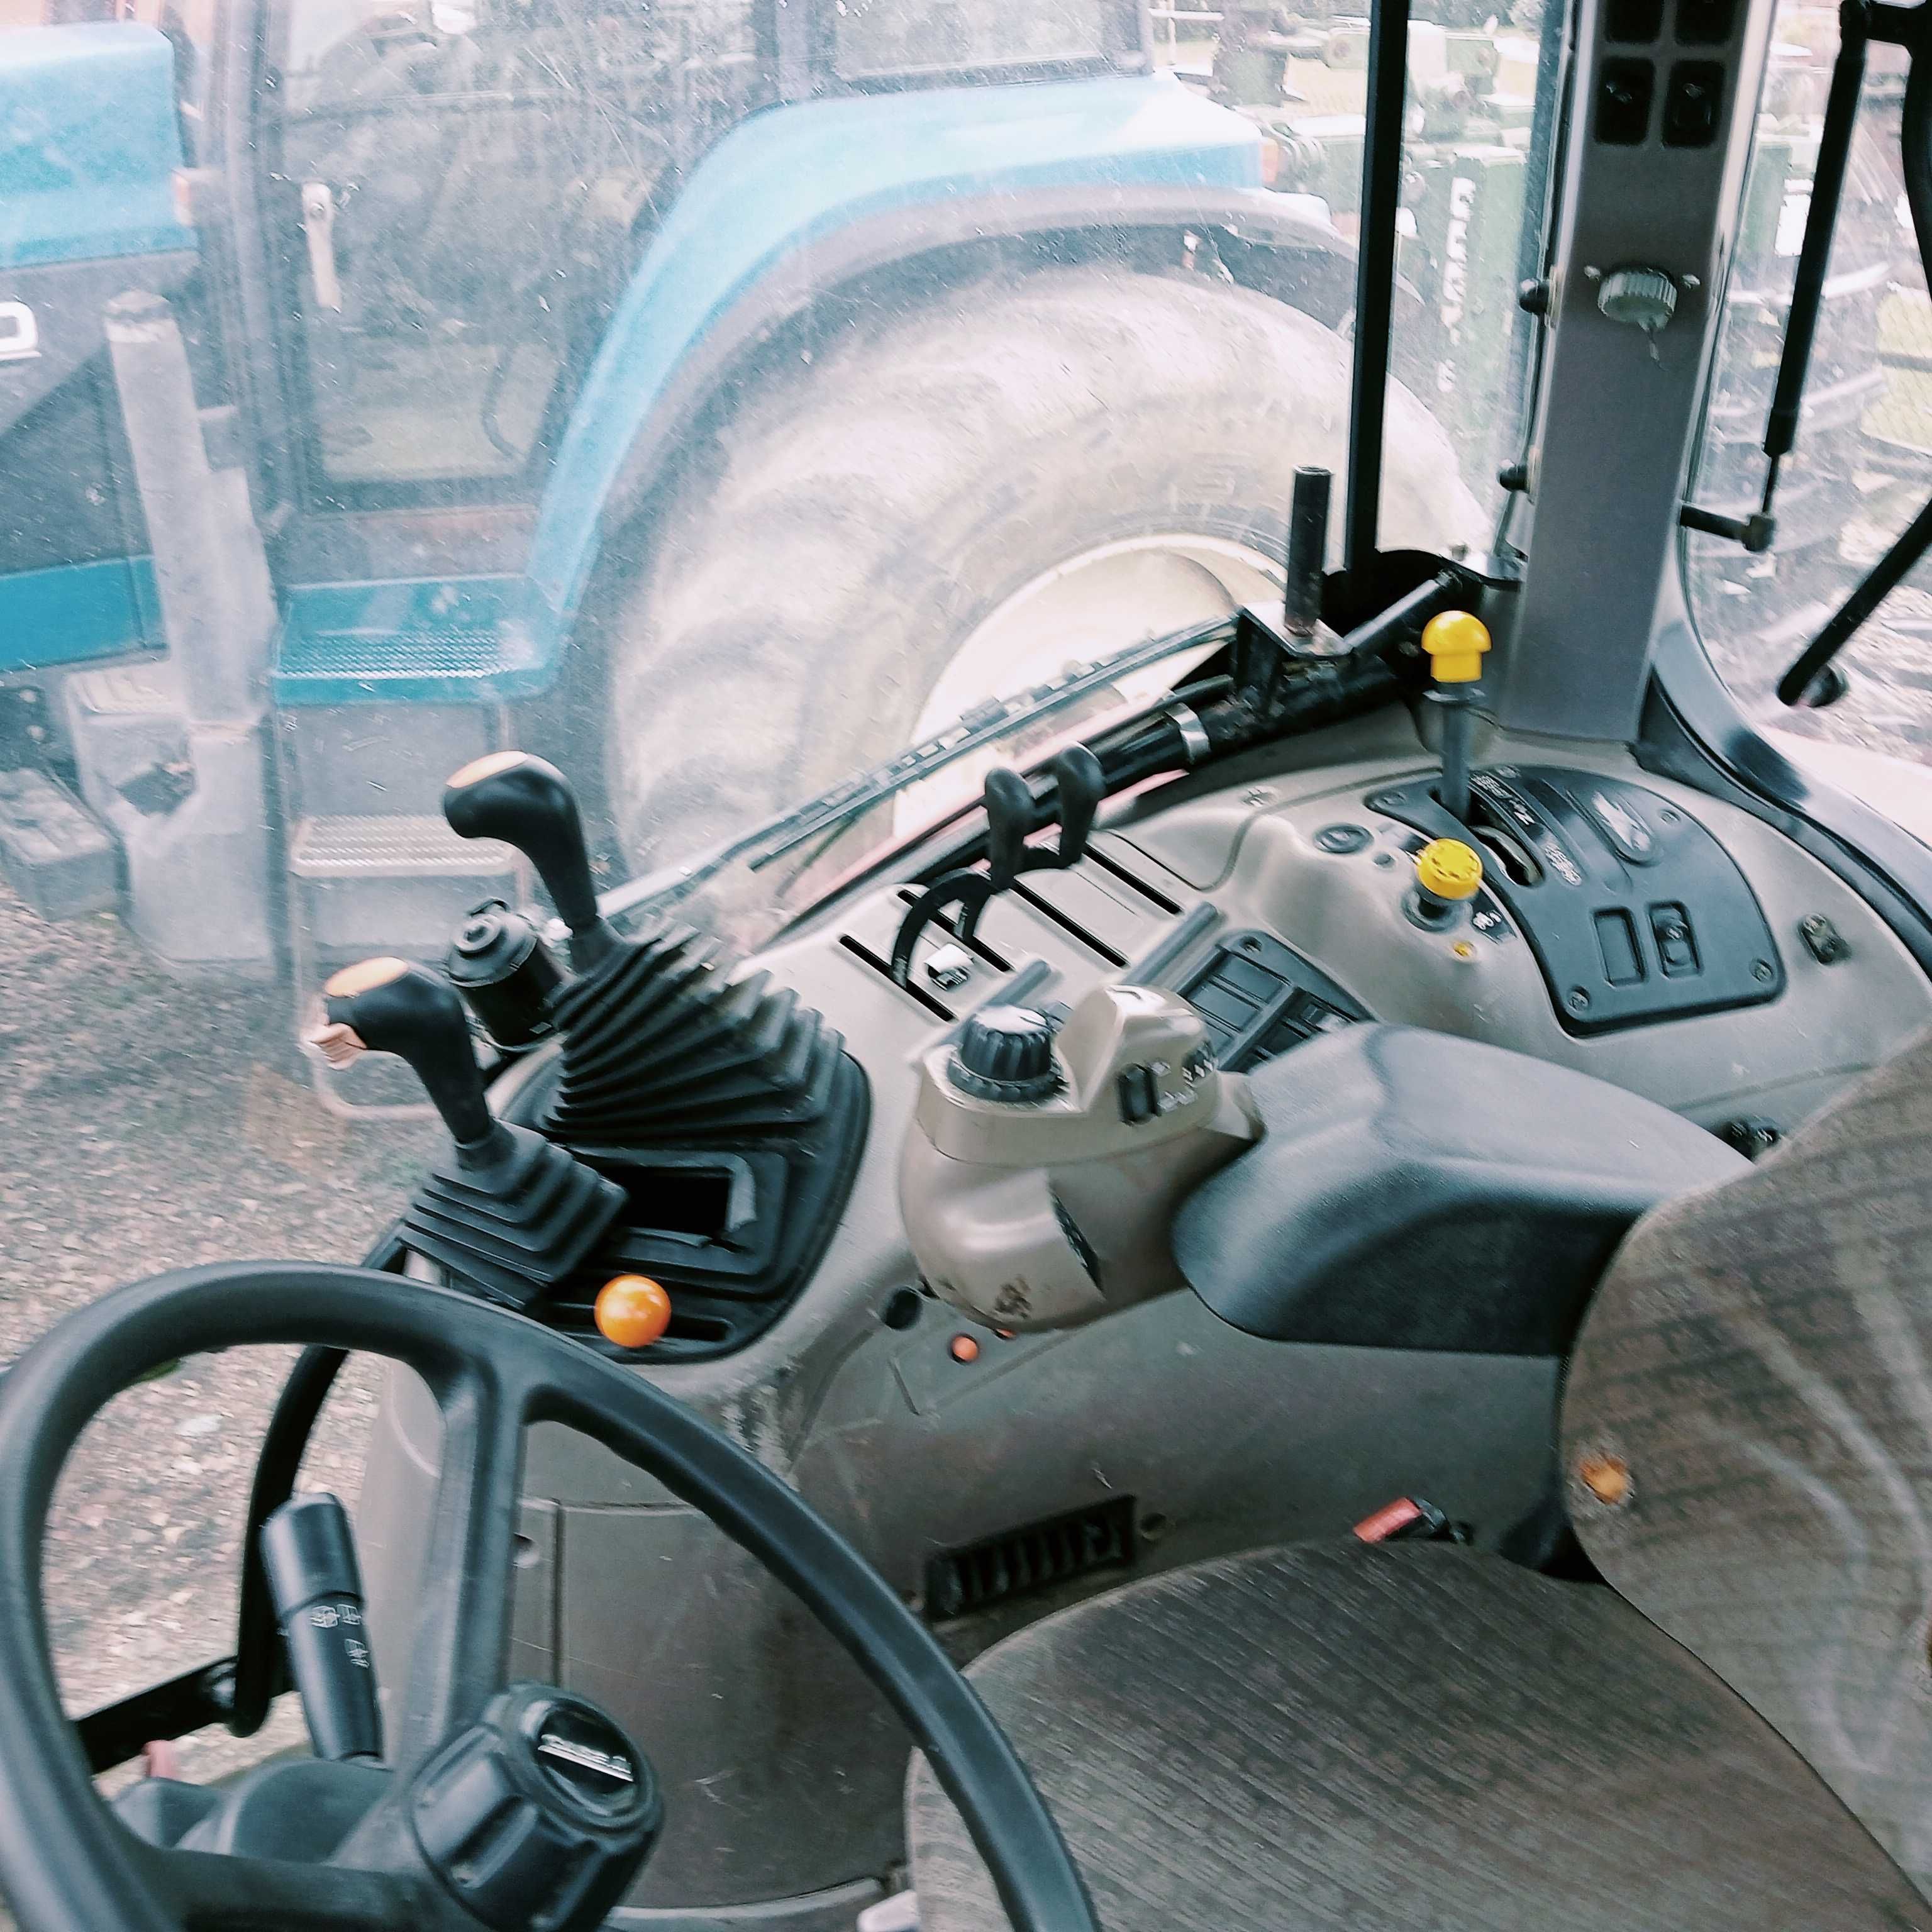 Ciągnik rolniczy case maxxum 100, 2008 rok, 11700 h, 4 cyl turbo,